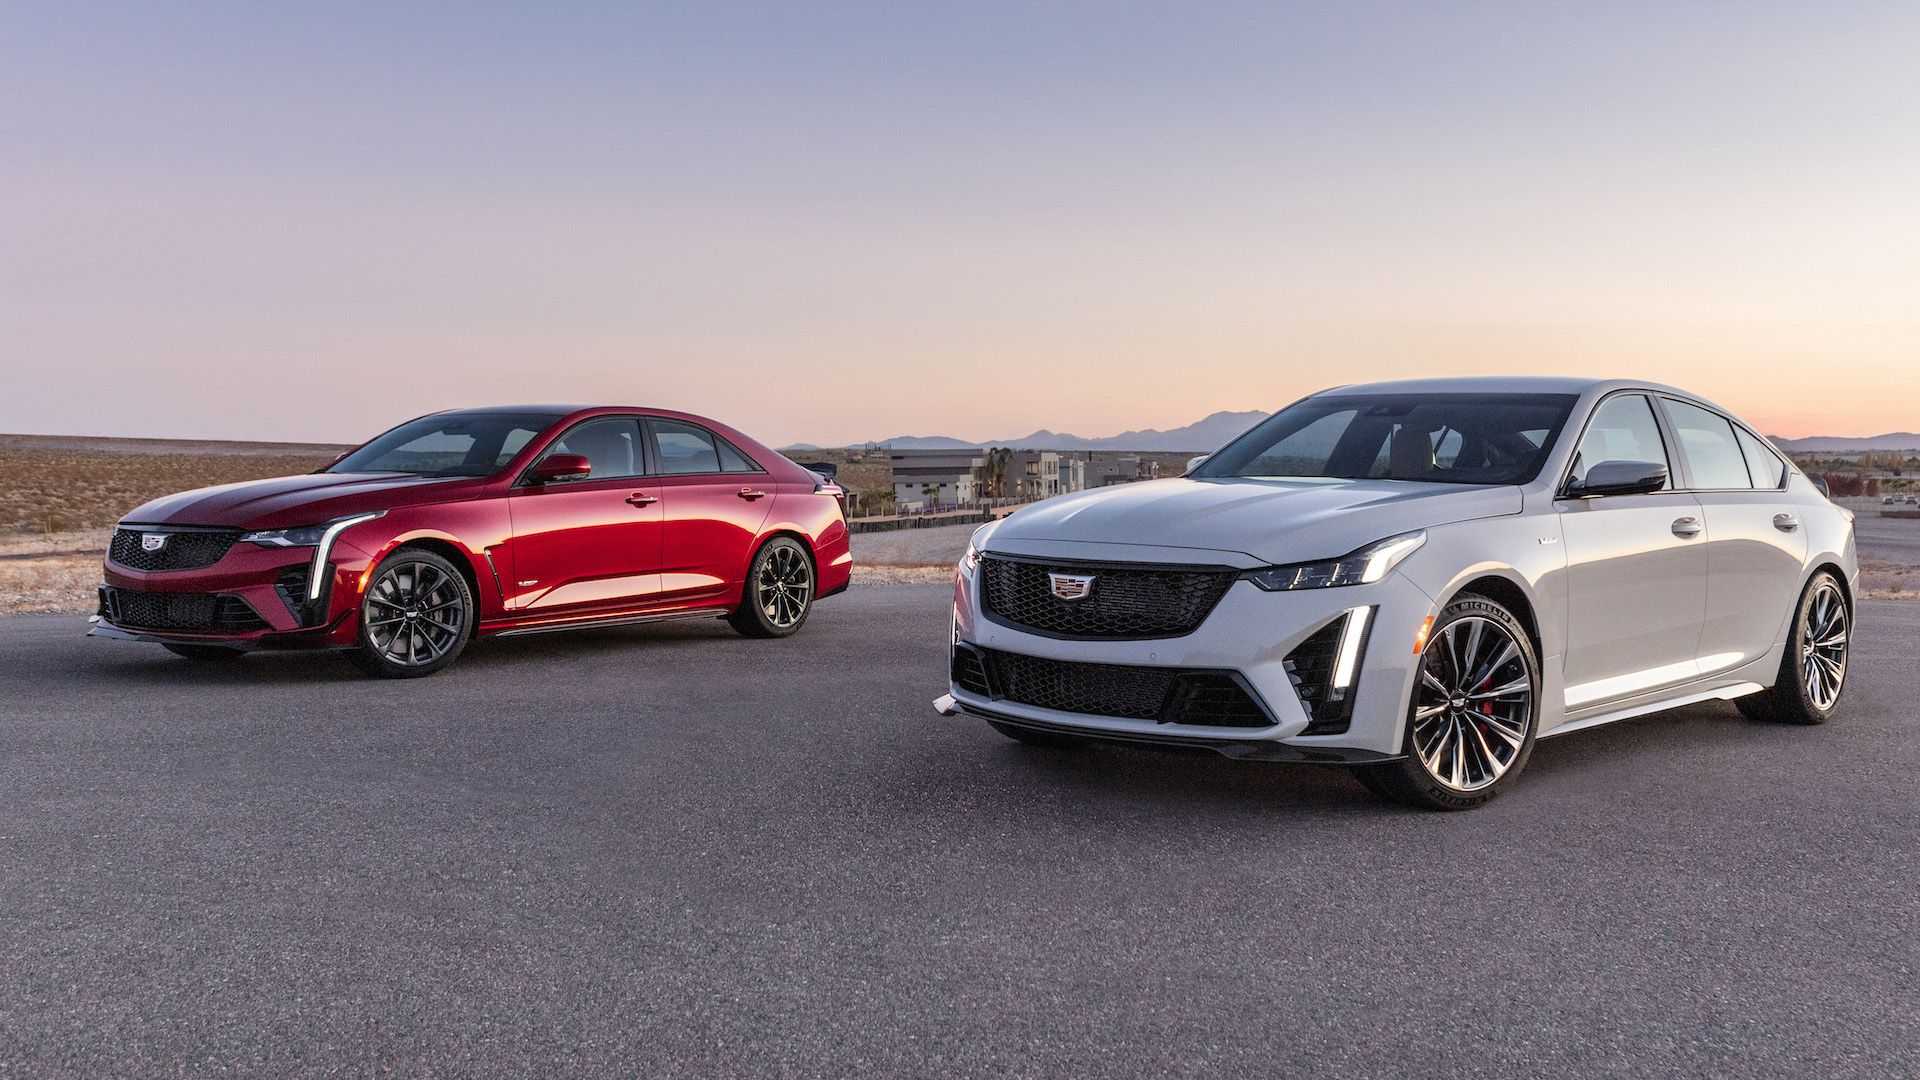 Cadillac fait marche arrière sur son engagement envers les véhicules électriques exclusivement en 2030